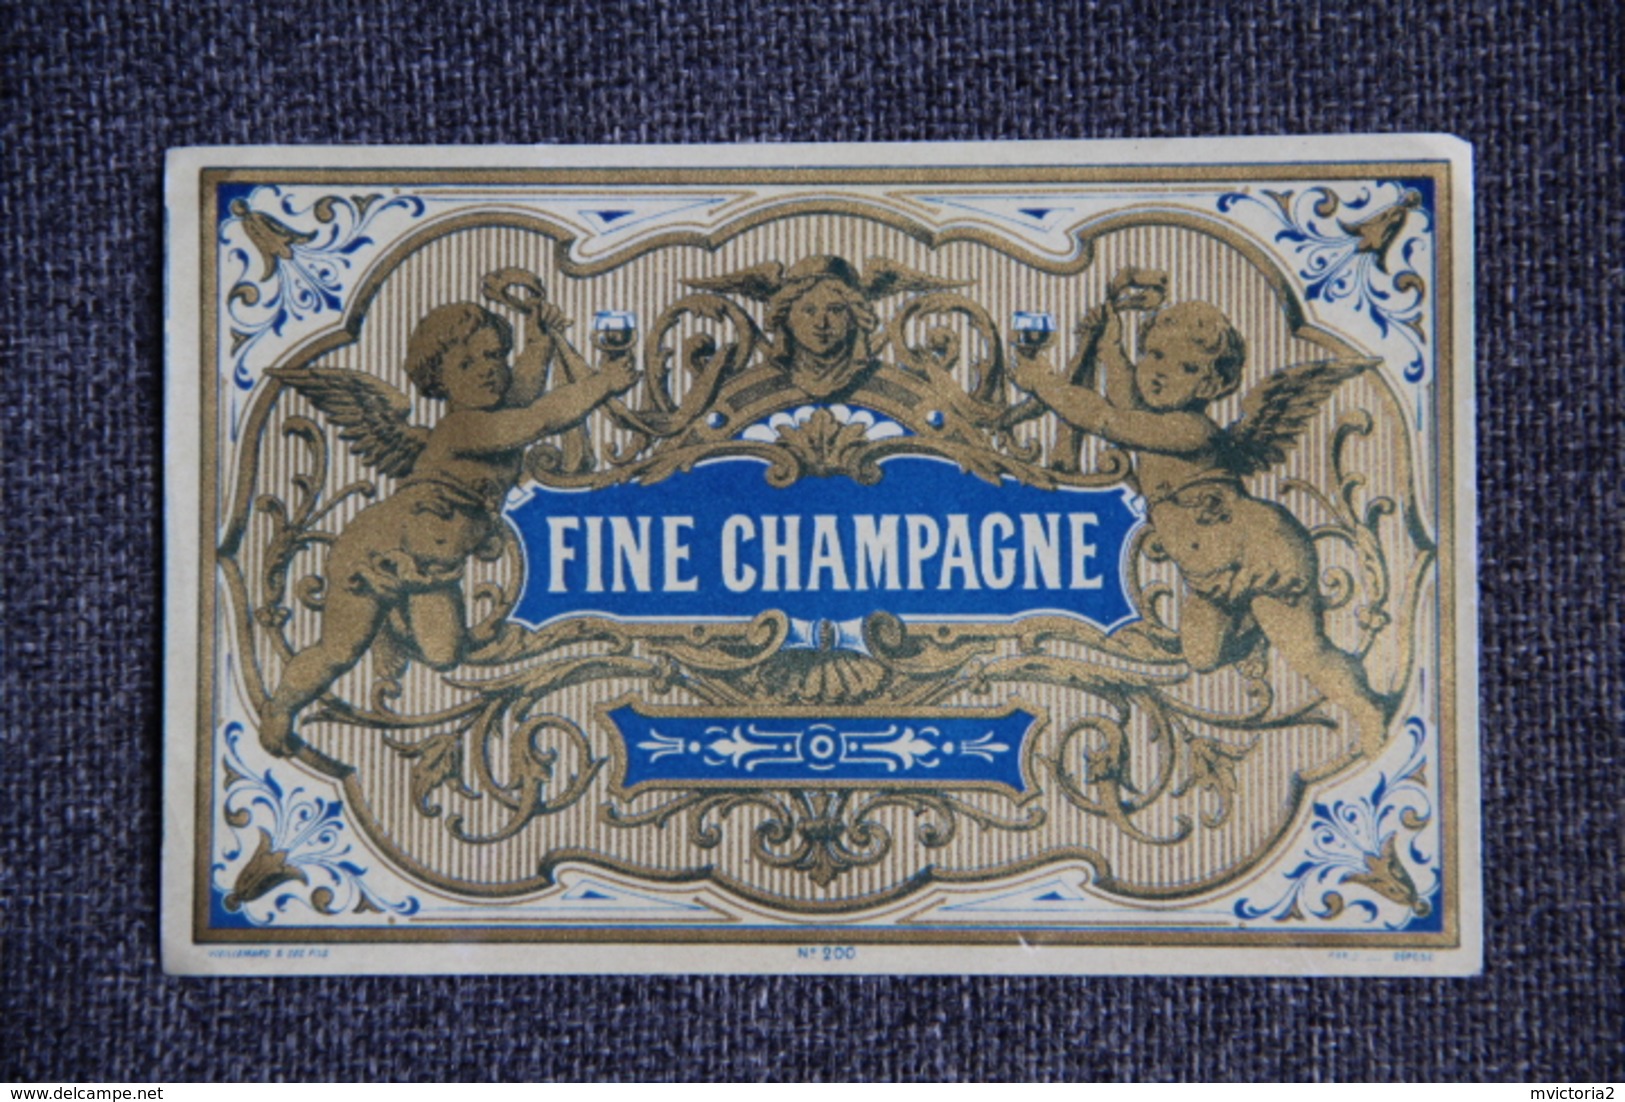 FINE CHAMPAGNE - Champagne